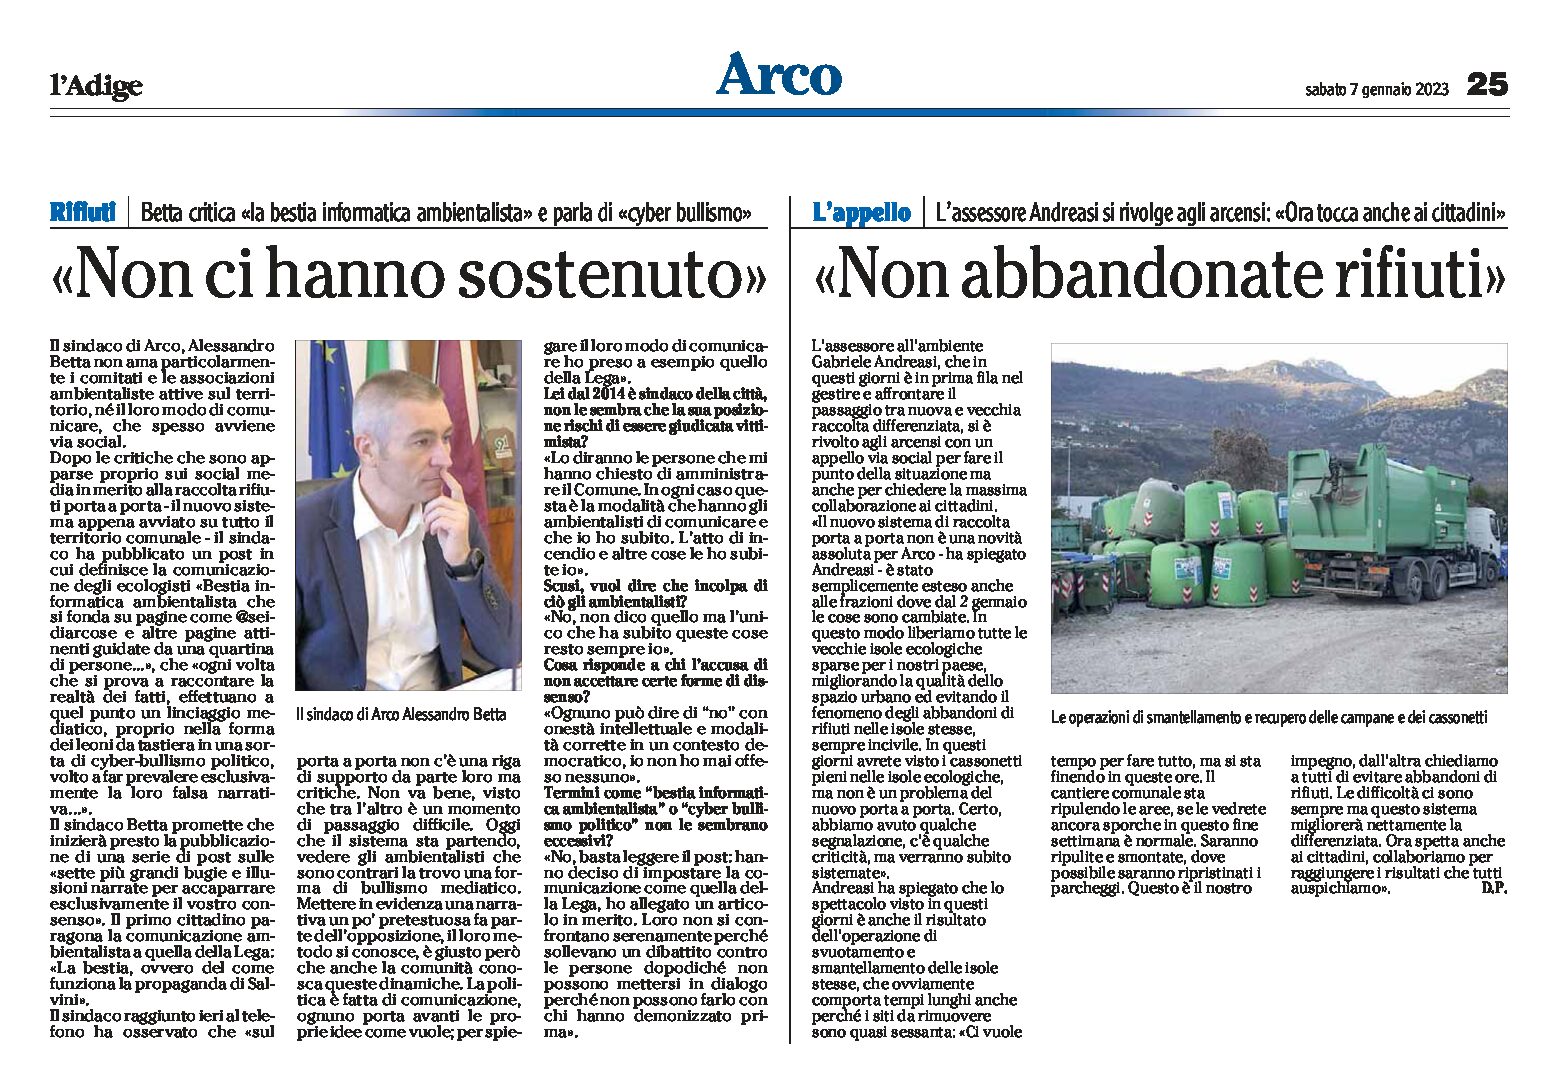 Arco, rifiuti: Betta critica gli ambientalisti e Andreasi si appella agli arcensi “non abbandonate rifiuti”